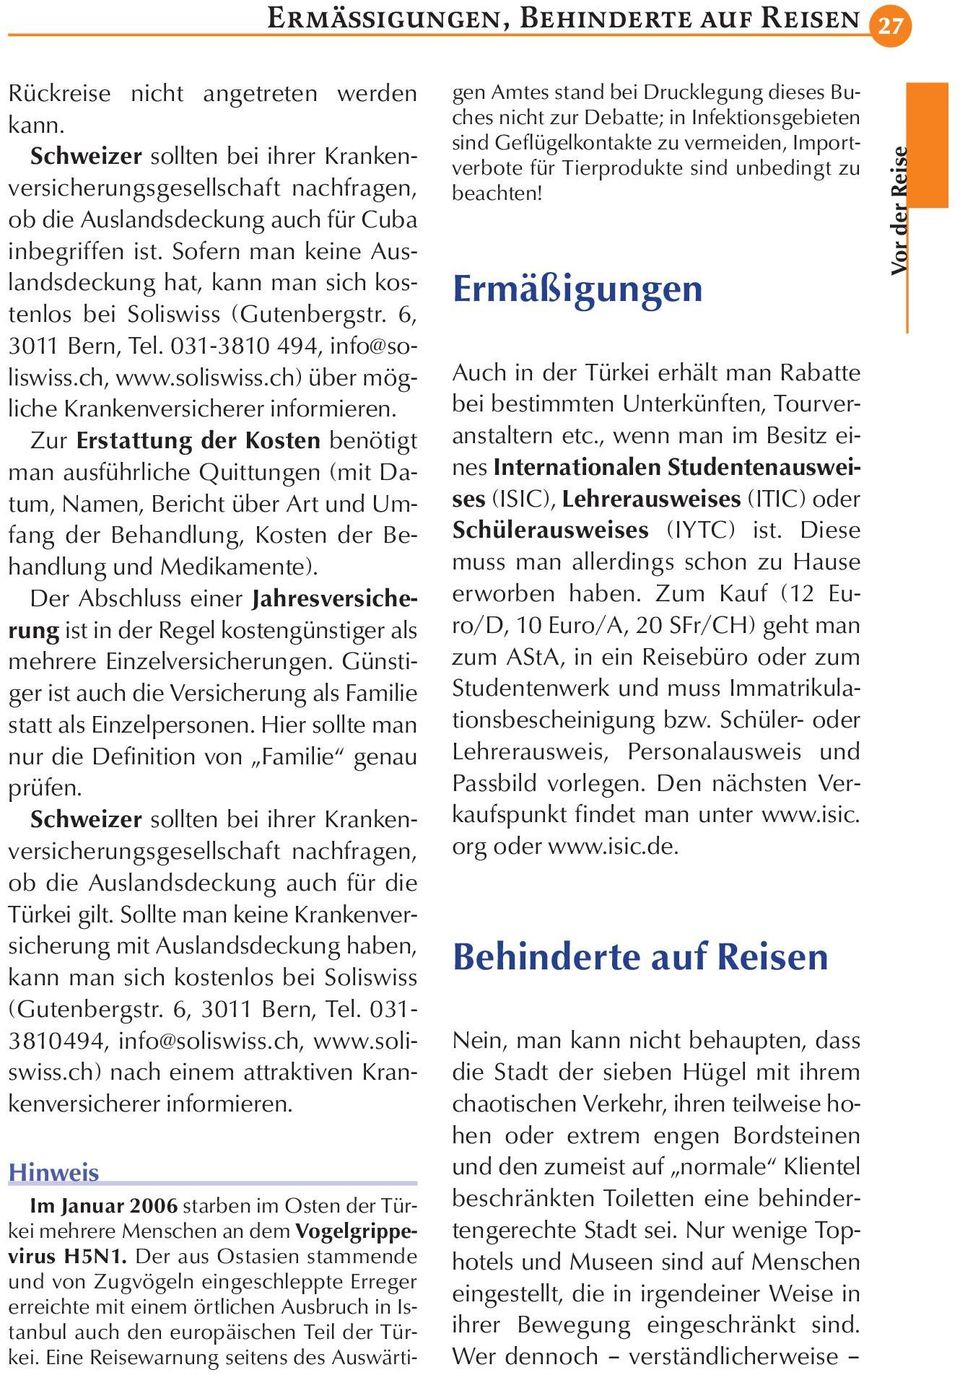 Sofern man keine Auslandsdeckung hat, kann man sich kostenlos bei Soliswiss (Gutenbergstr. 6, 3011 Bern, Tel. 031-3810 494, info@soliswiss.ch, www.soliswiss.ch) über mögliche Krankenversicherer informieren.